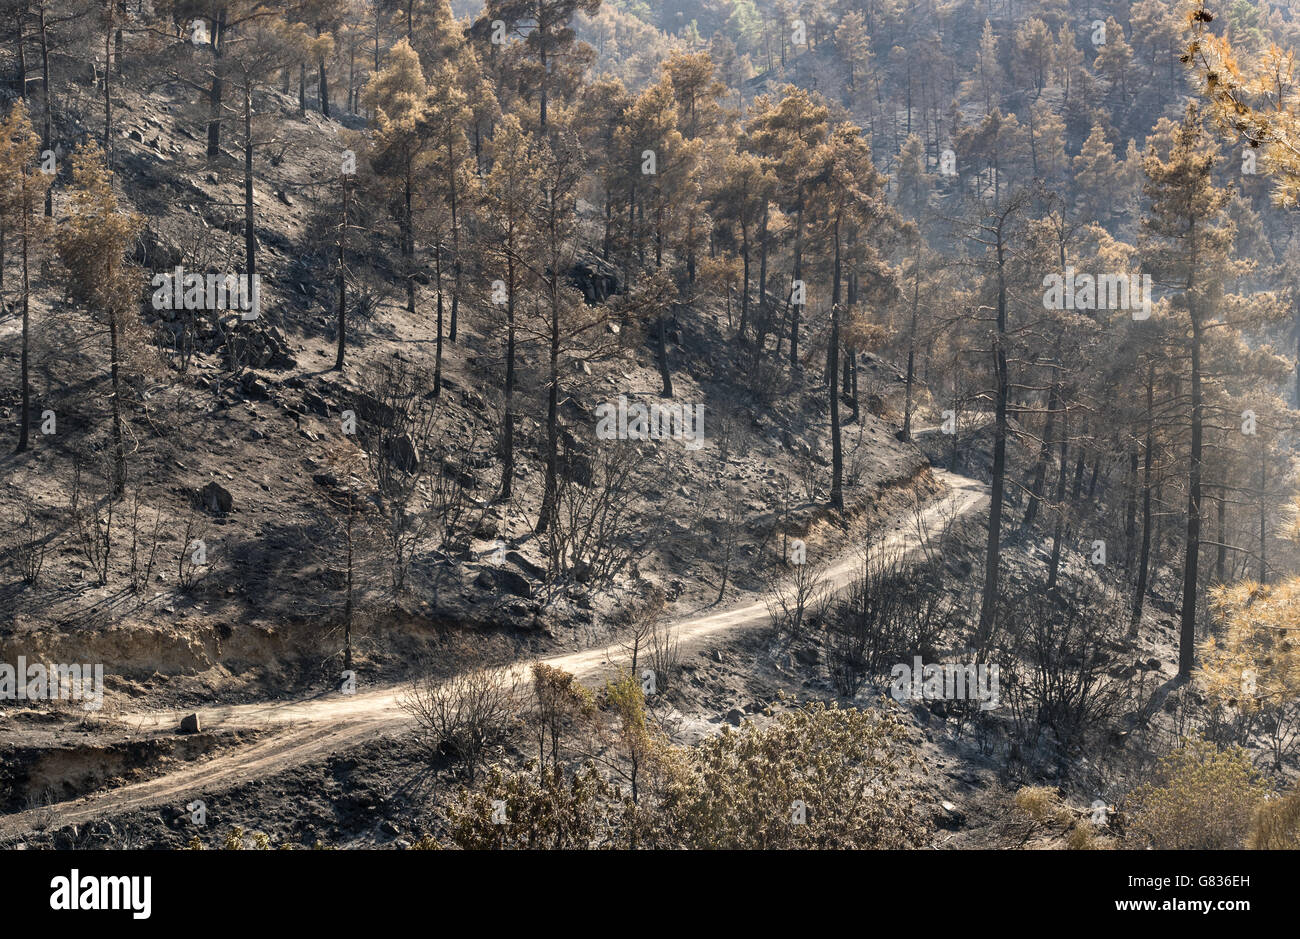 Foresta e alberi dopo un grande incendio di foresta a Monti Troodos in Cipro che ha creato un grande danno ambientale. Foto Stock